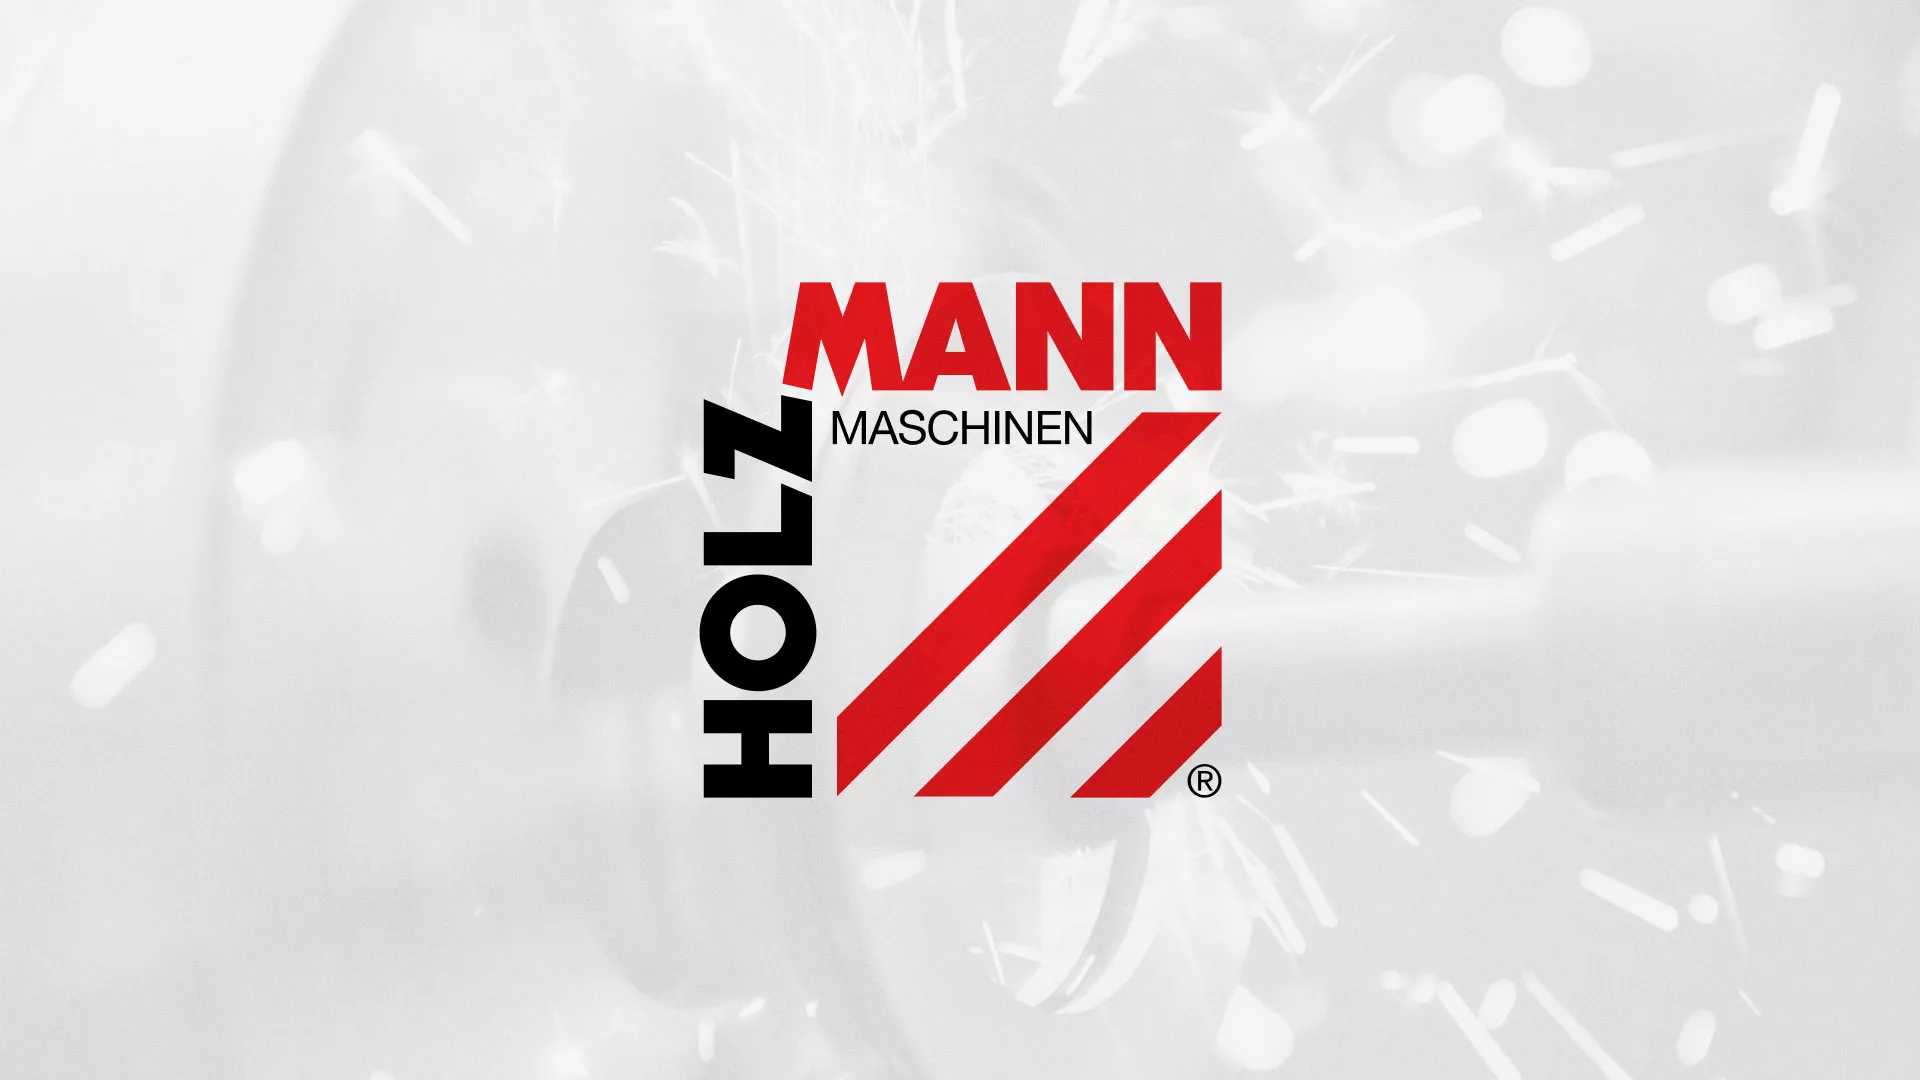 Создание сайта компании «HOLZMANN Maschinen GmbH» в Выксе